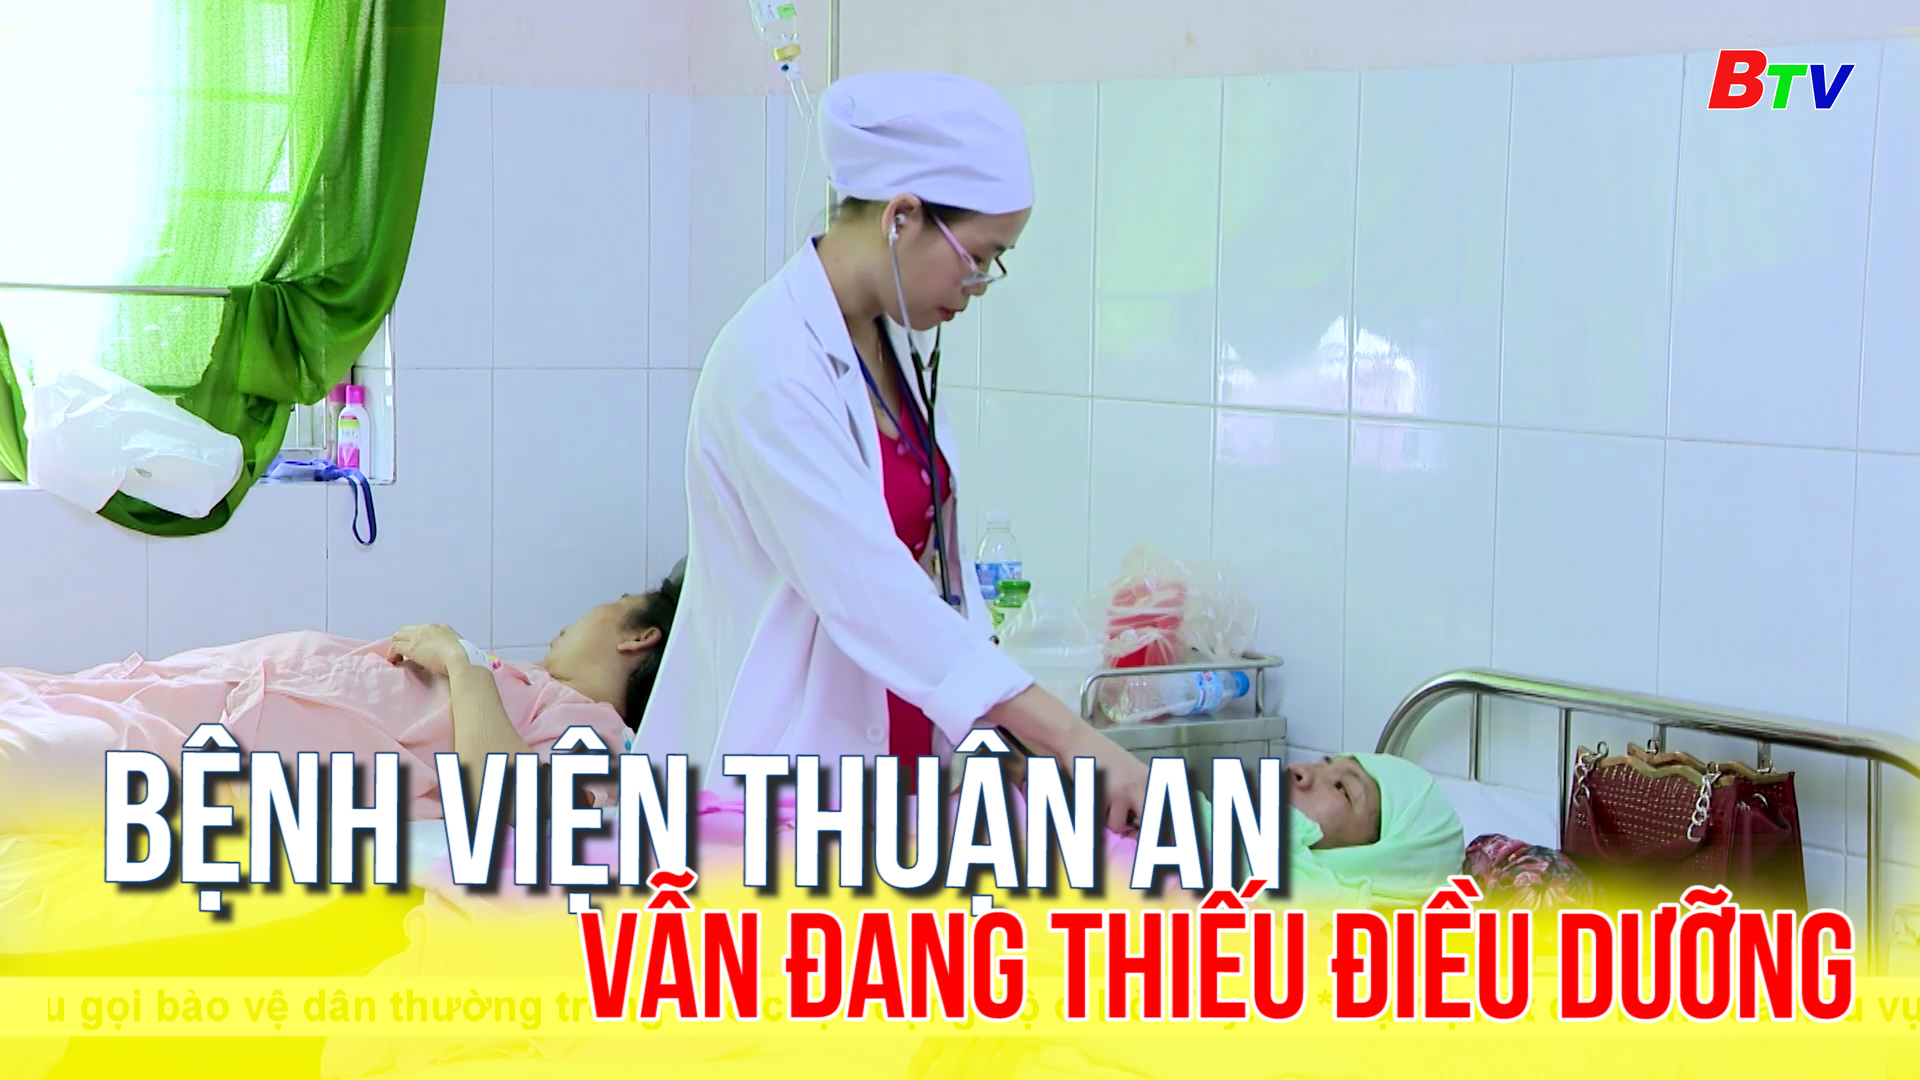 Bệnh viện Thuận An vẫn đang thiếu điều dưỡng